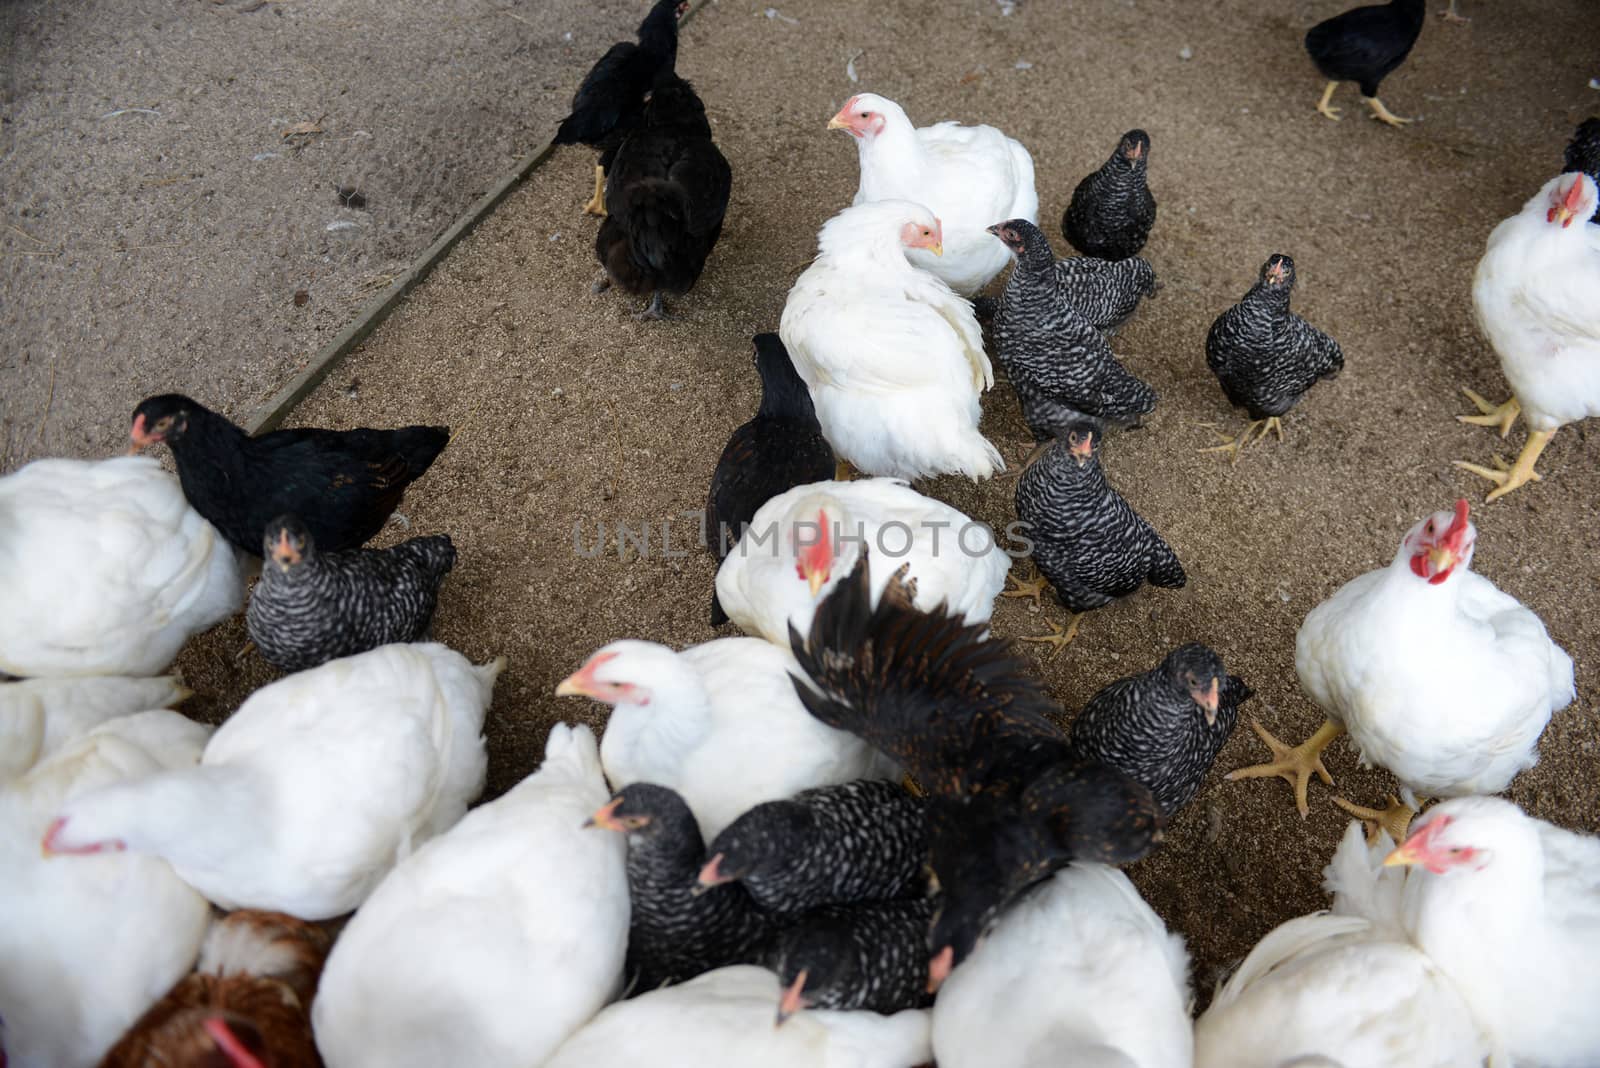 crowded chickens on farm
